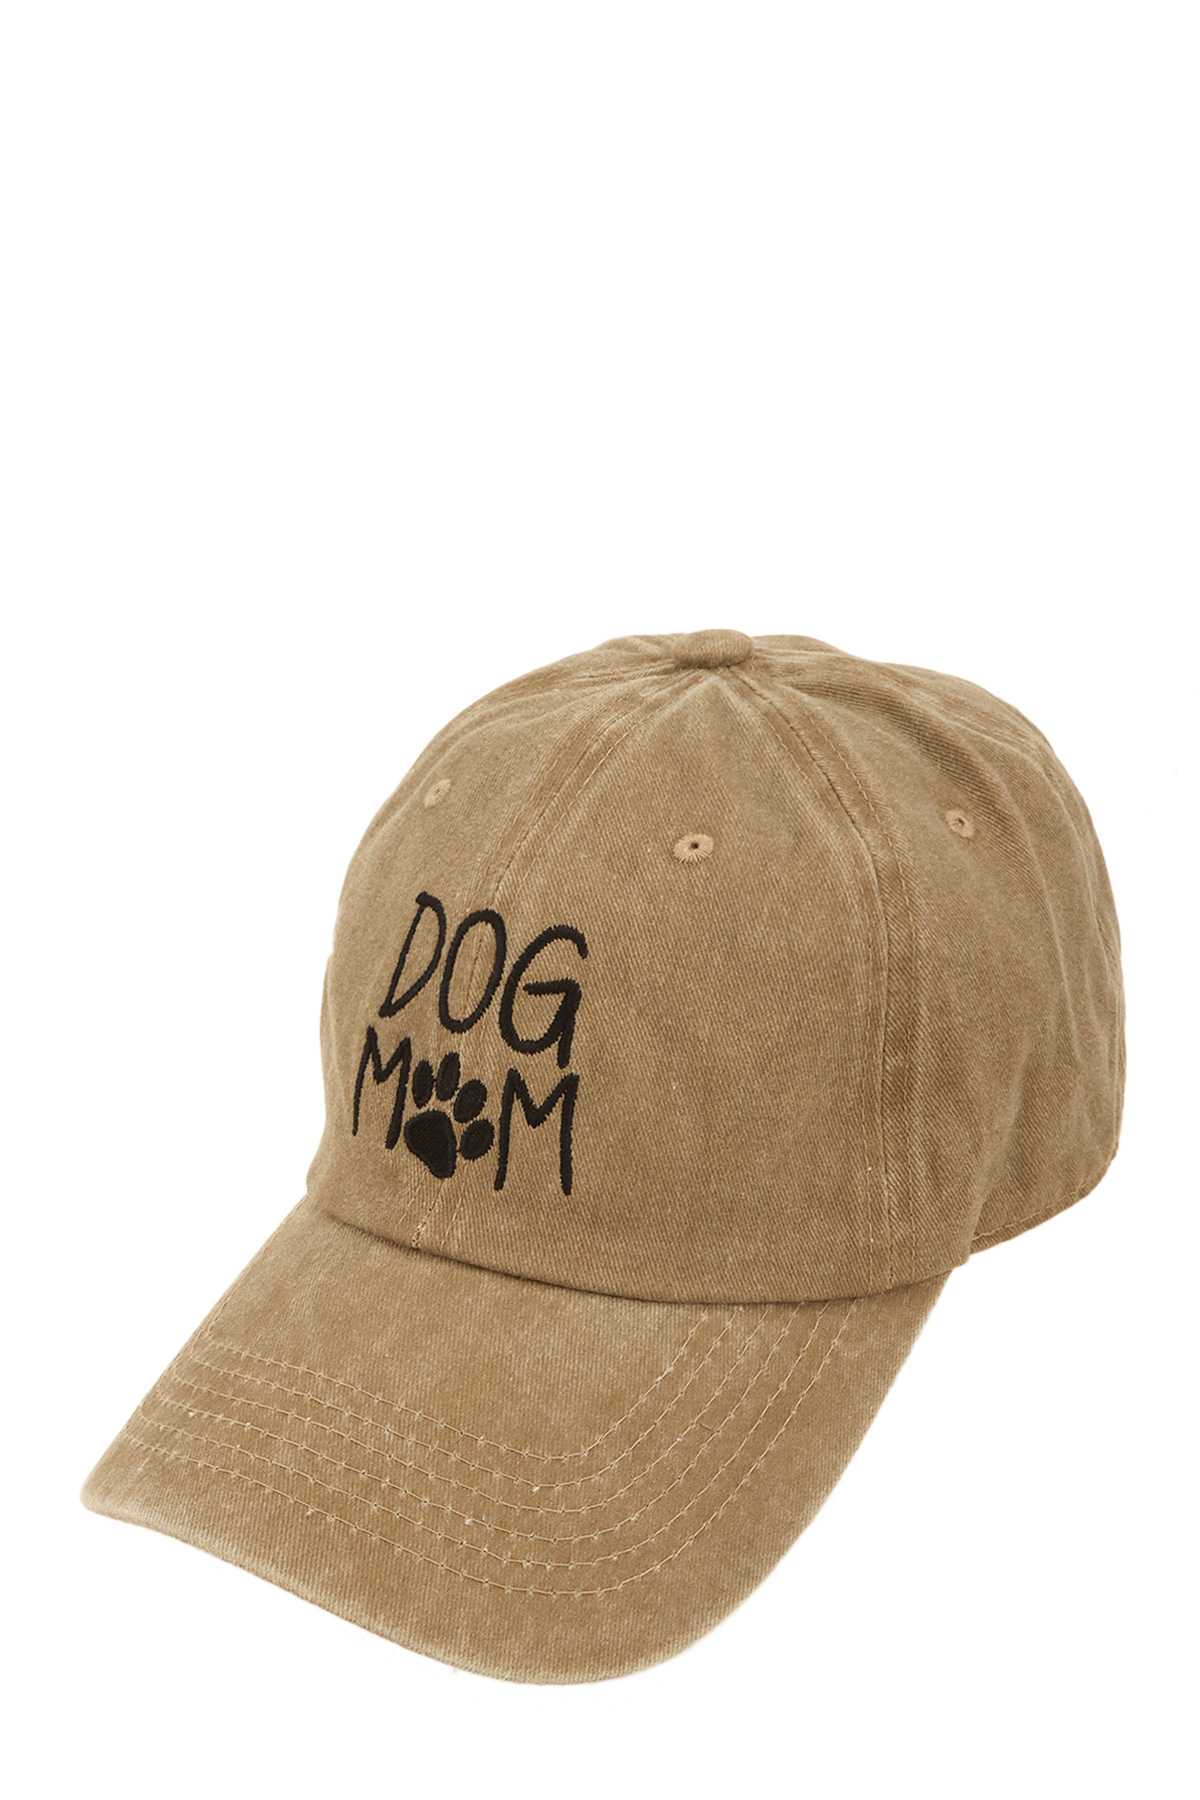 'DOG MOM' Pigment Cap